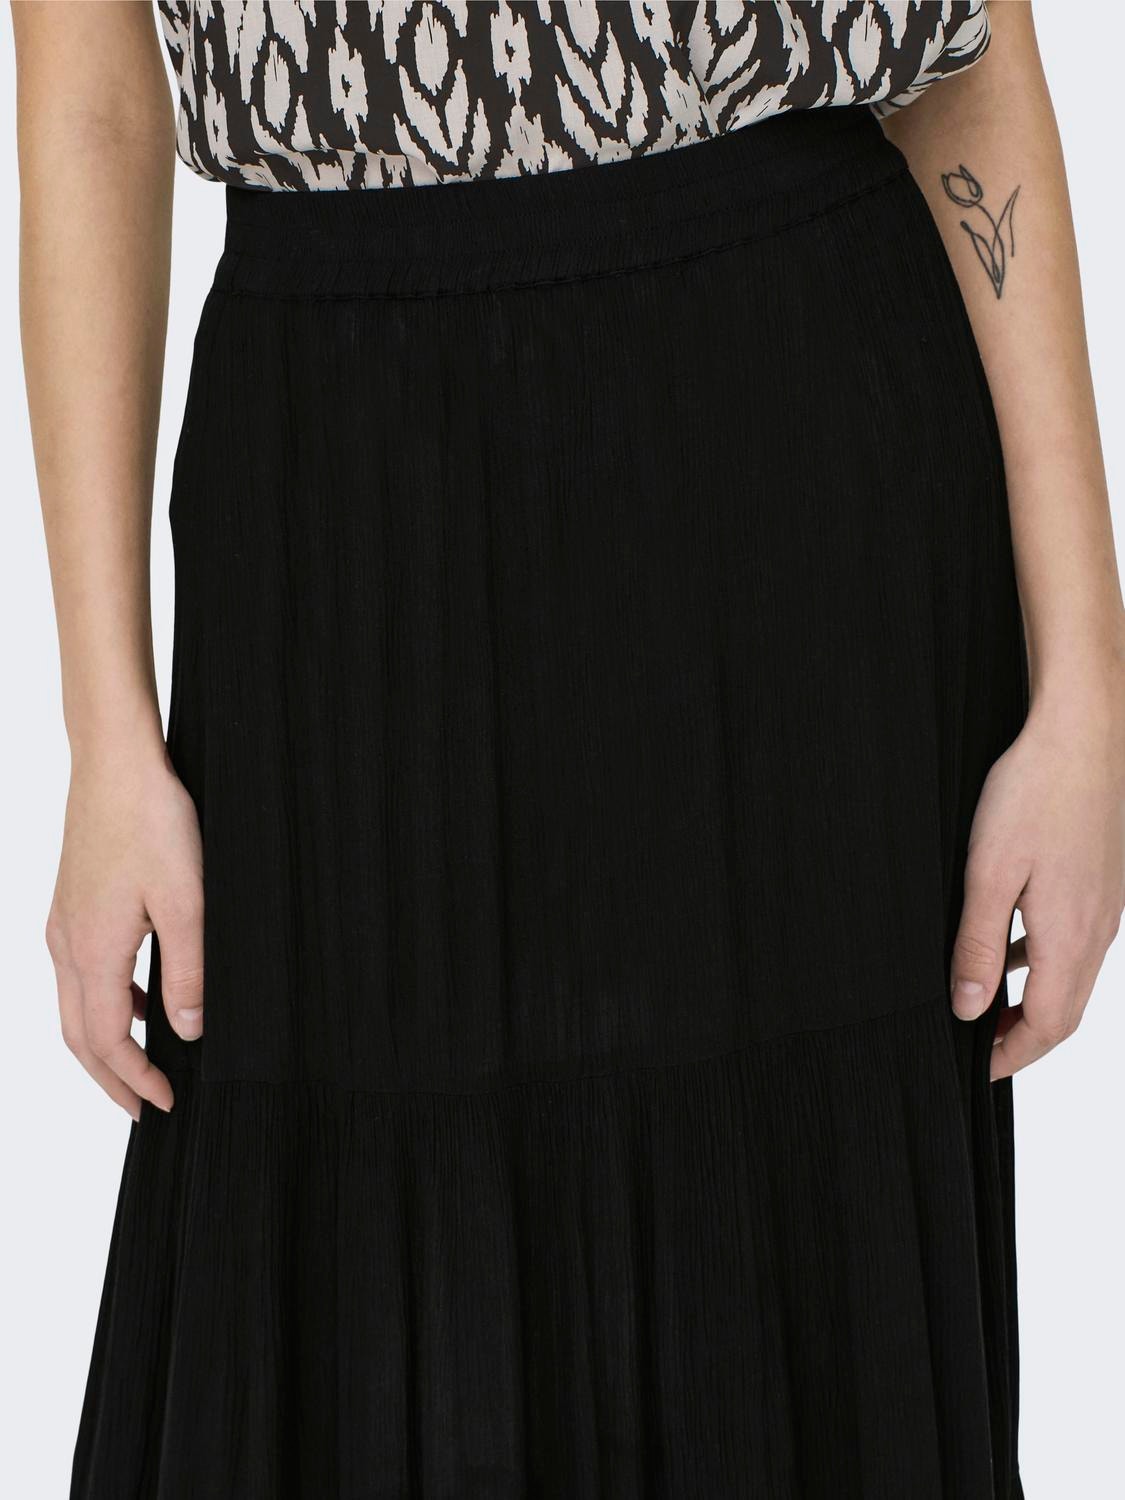 ONLY Mid waist Long skirt -Black - 15324808